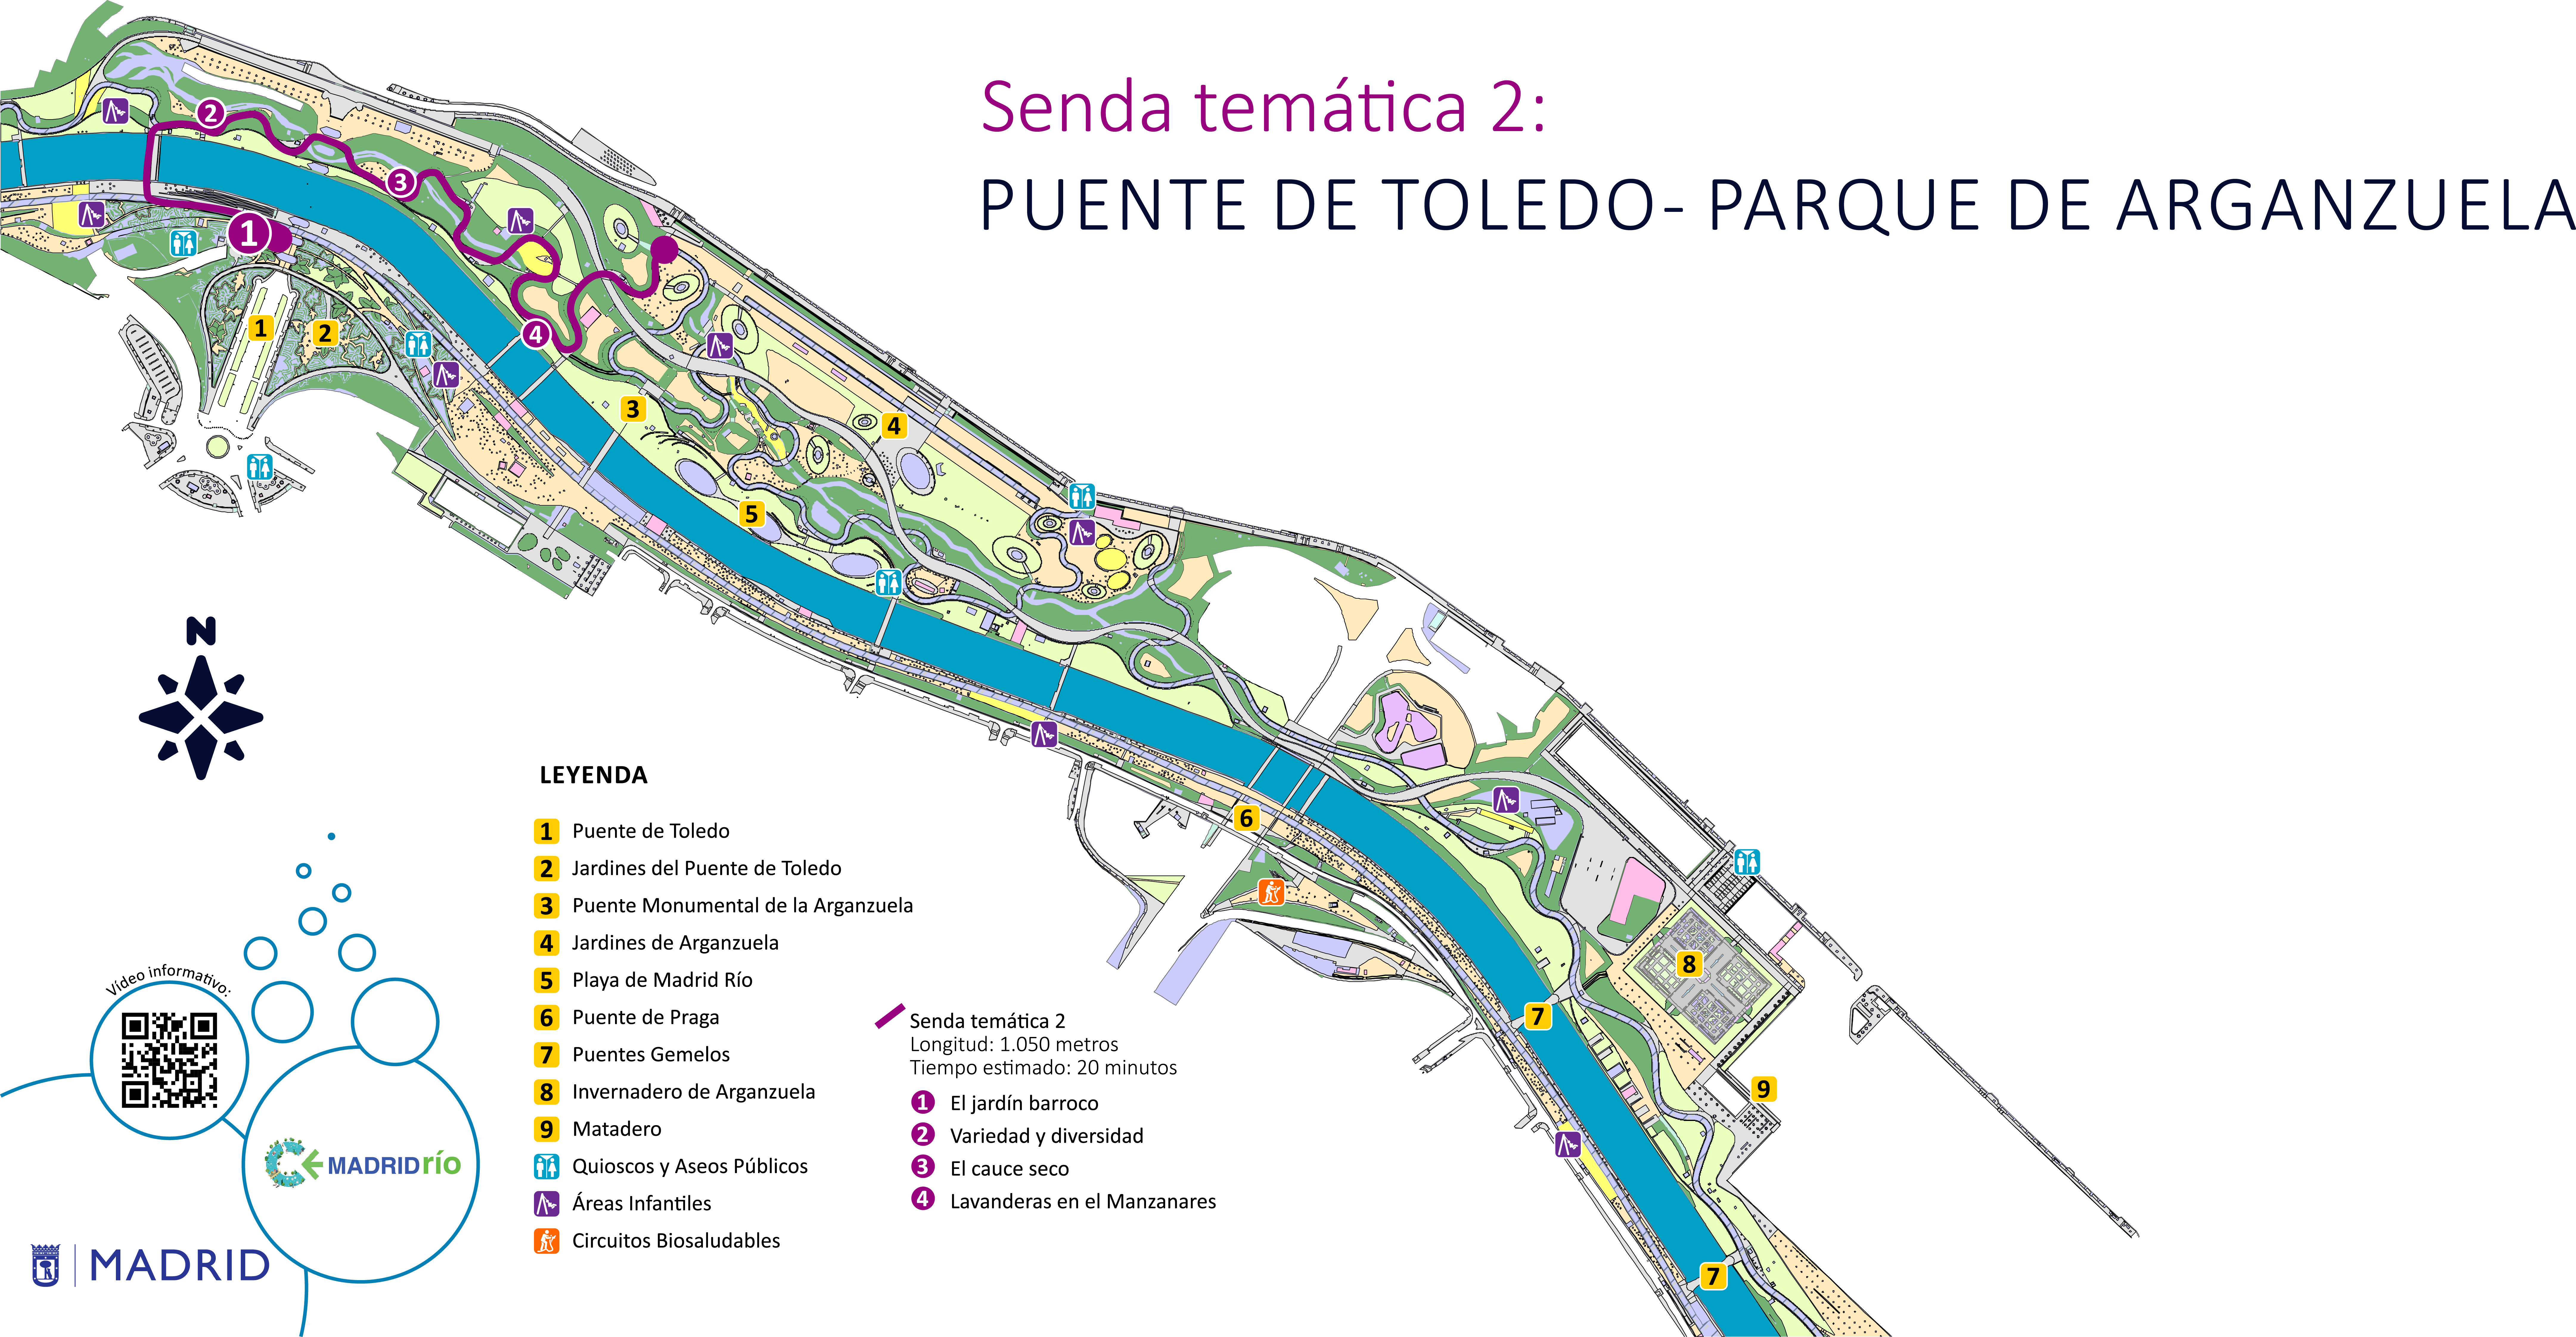 Mapa senda temática 2, puente de Toledo, parque de Arganzuela